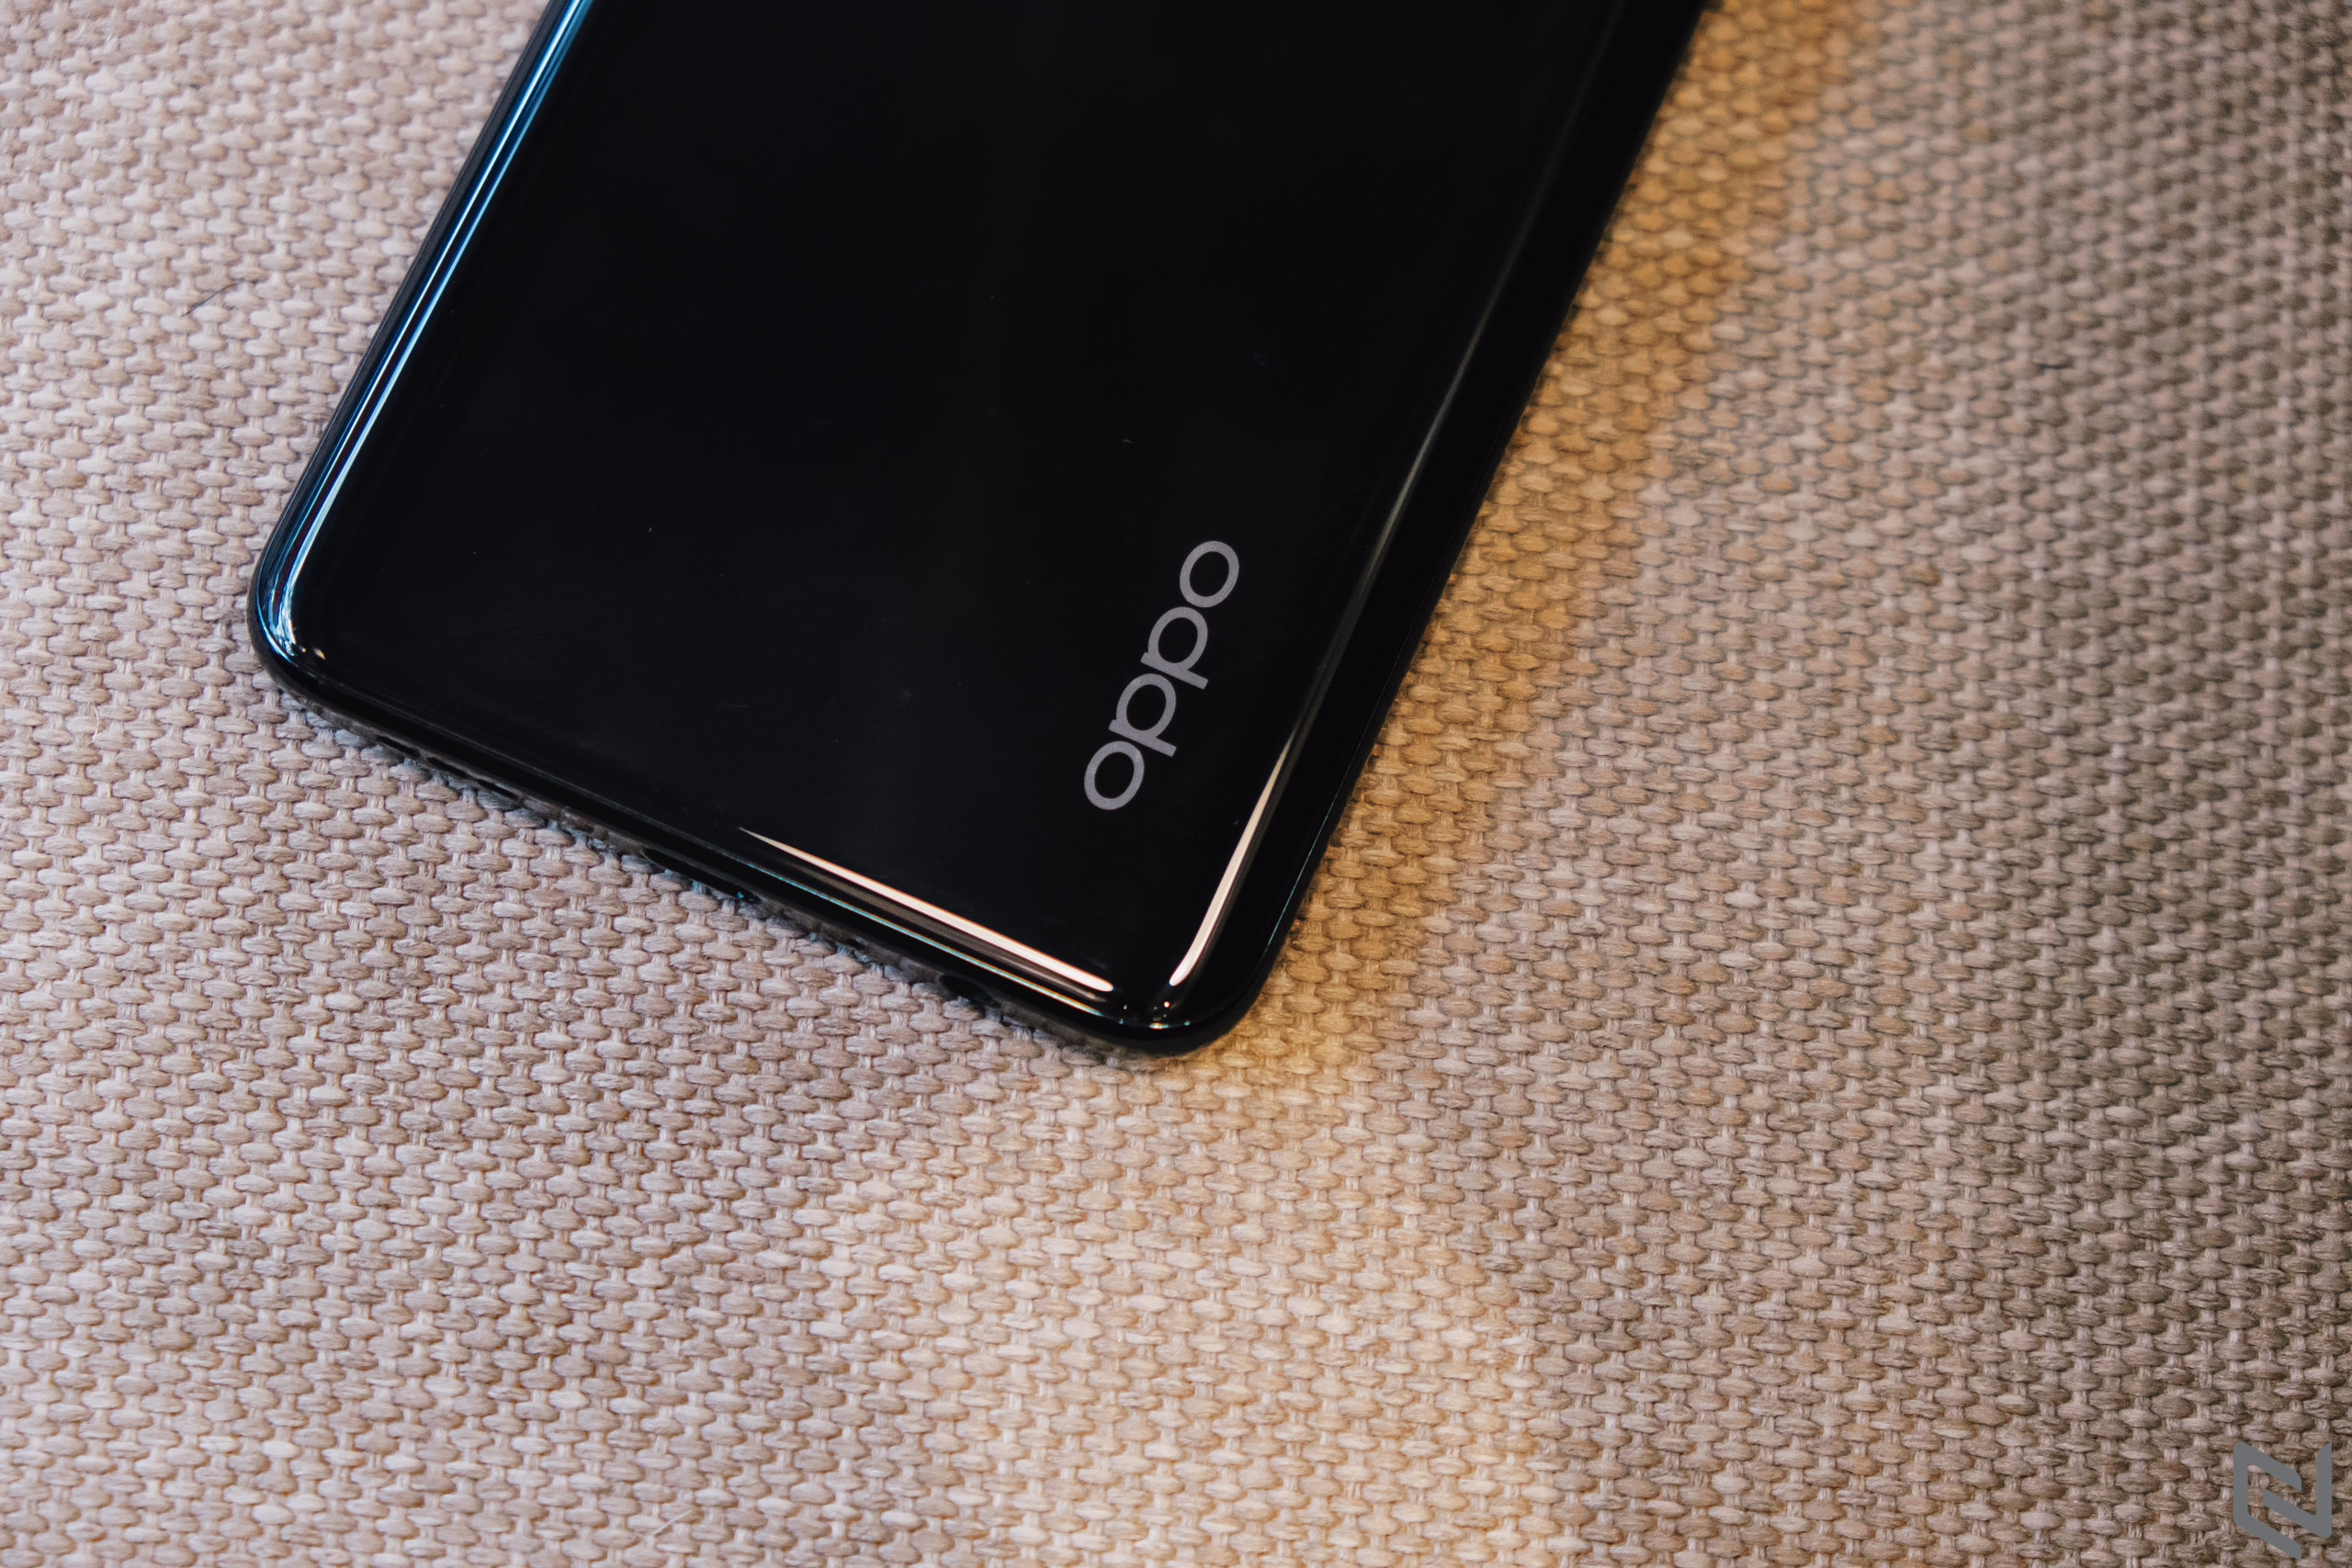 Đánh giá OPPO Reno3 Pro: Ngôi sao sáng ở phân khúc smartphone cận cao cấp